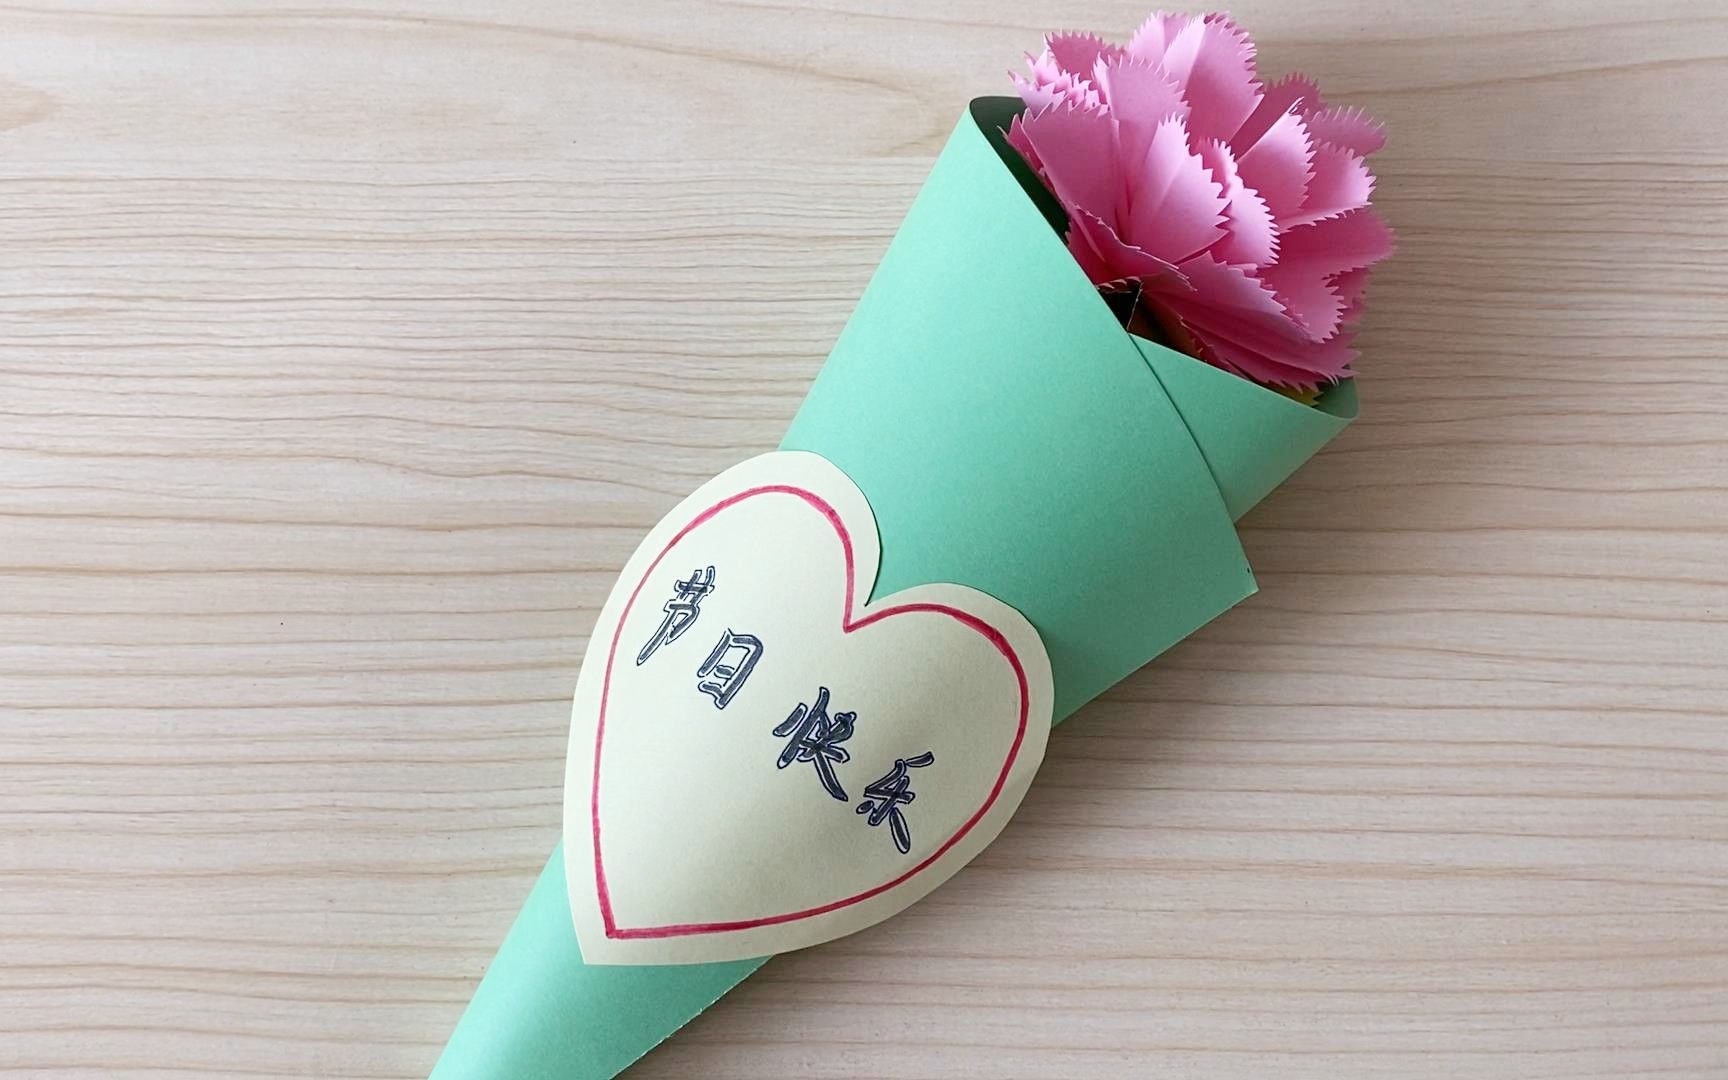 教师节手工礼物,康乃馨花束的制作方法!